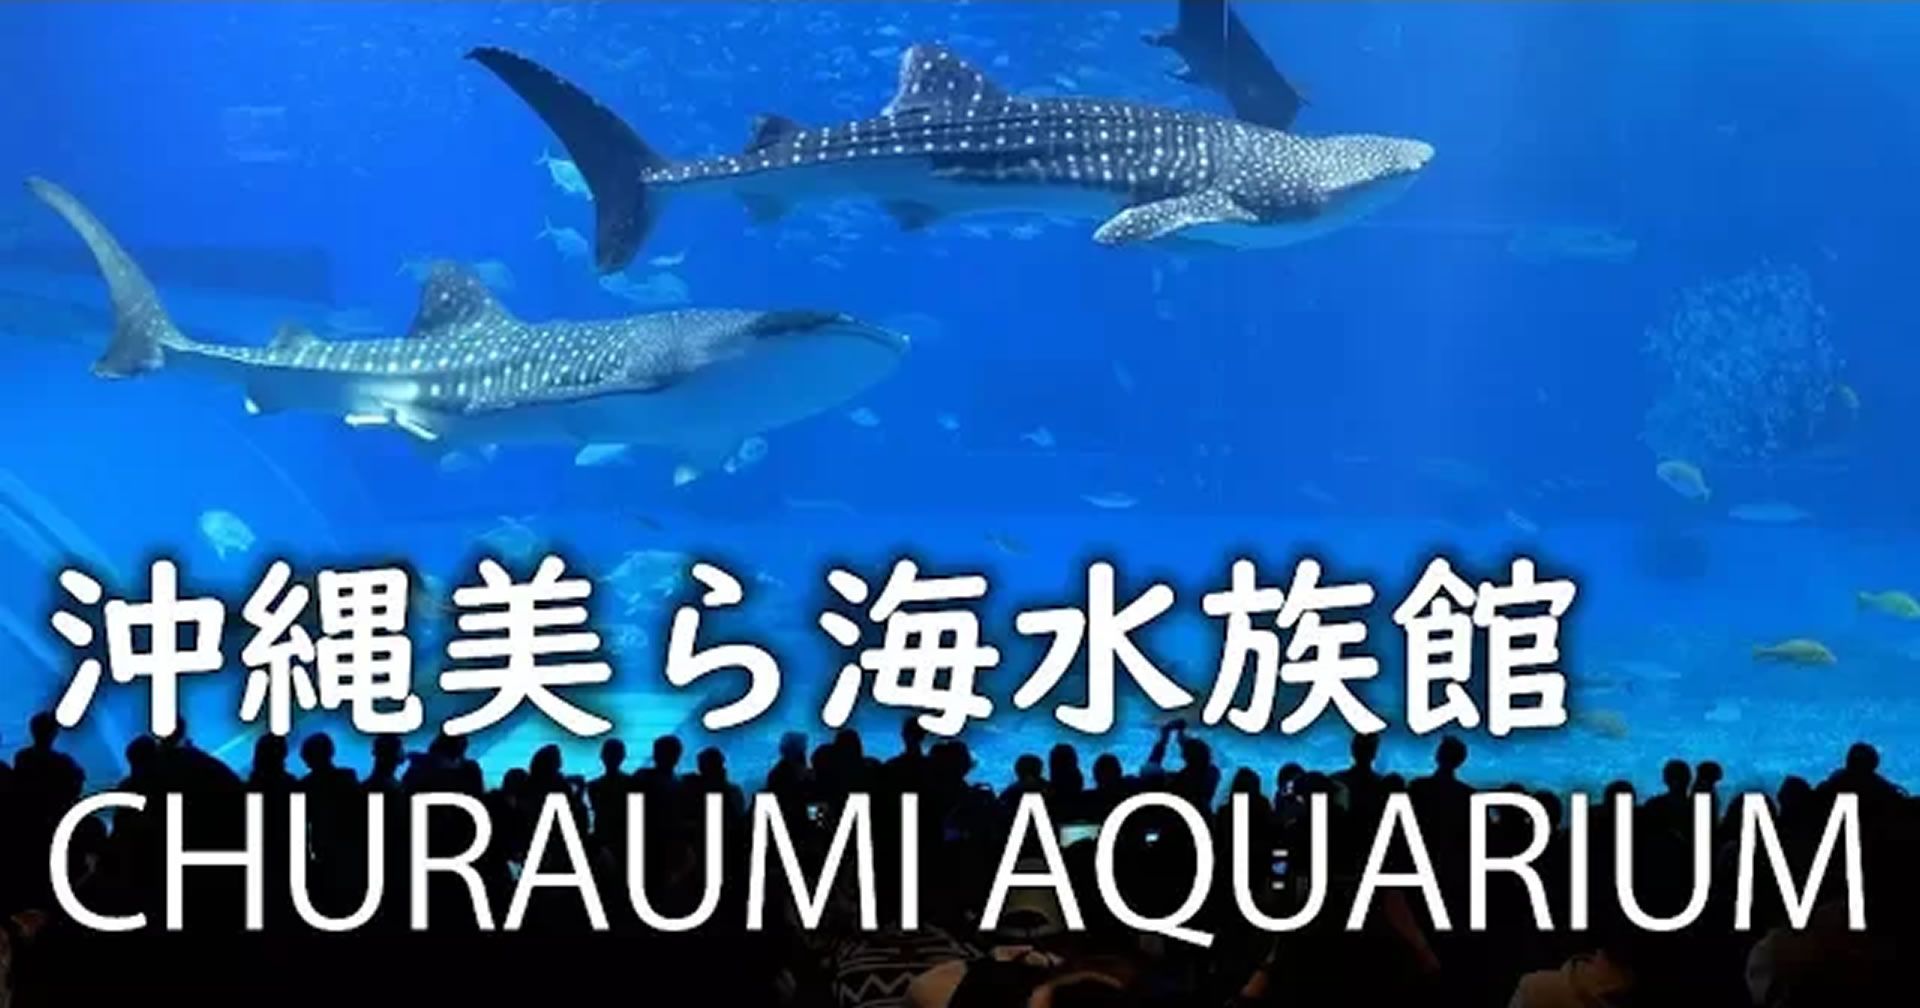 Churaumi Aquarium & Ocean Expo Park 沖縄美ら海水族館